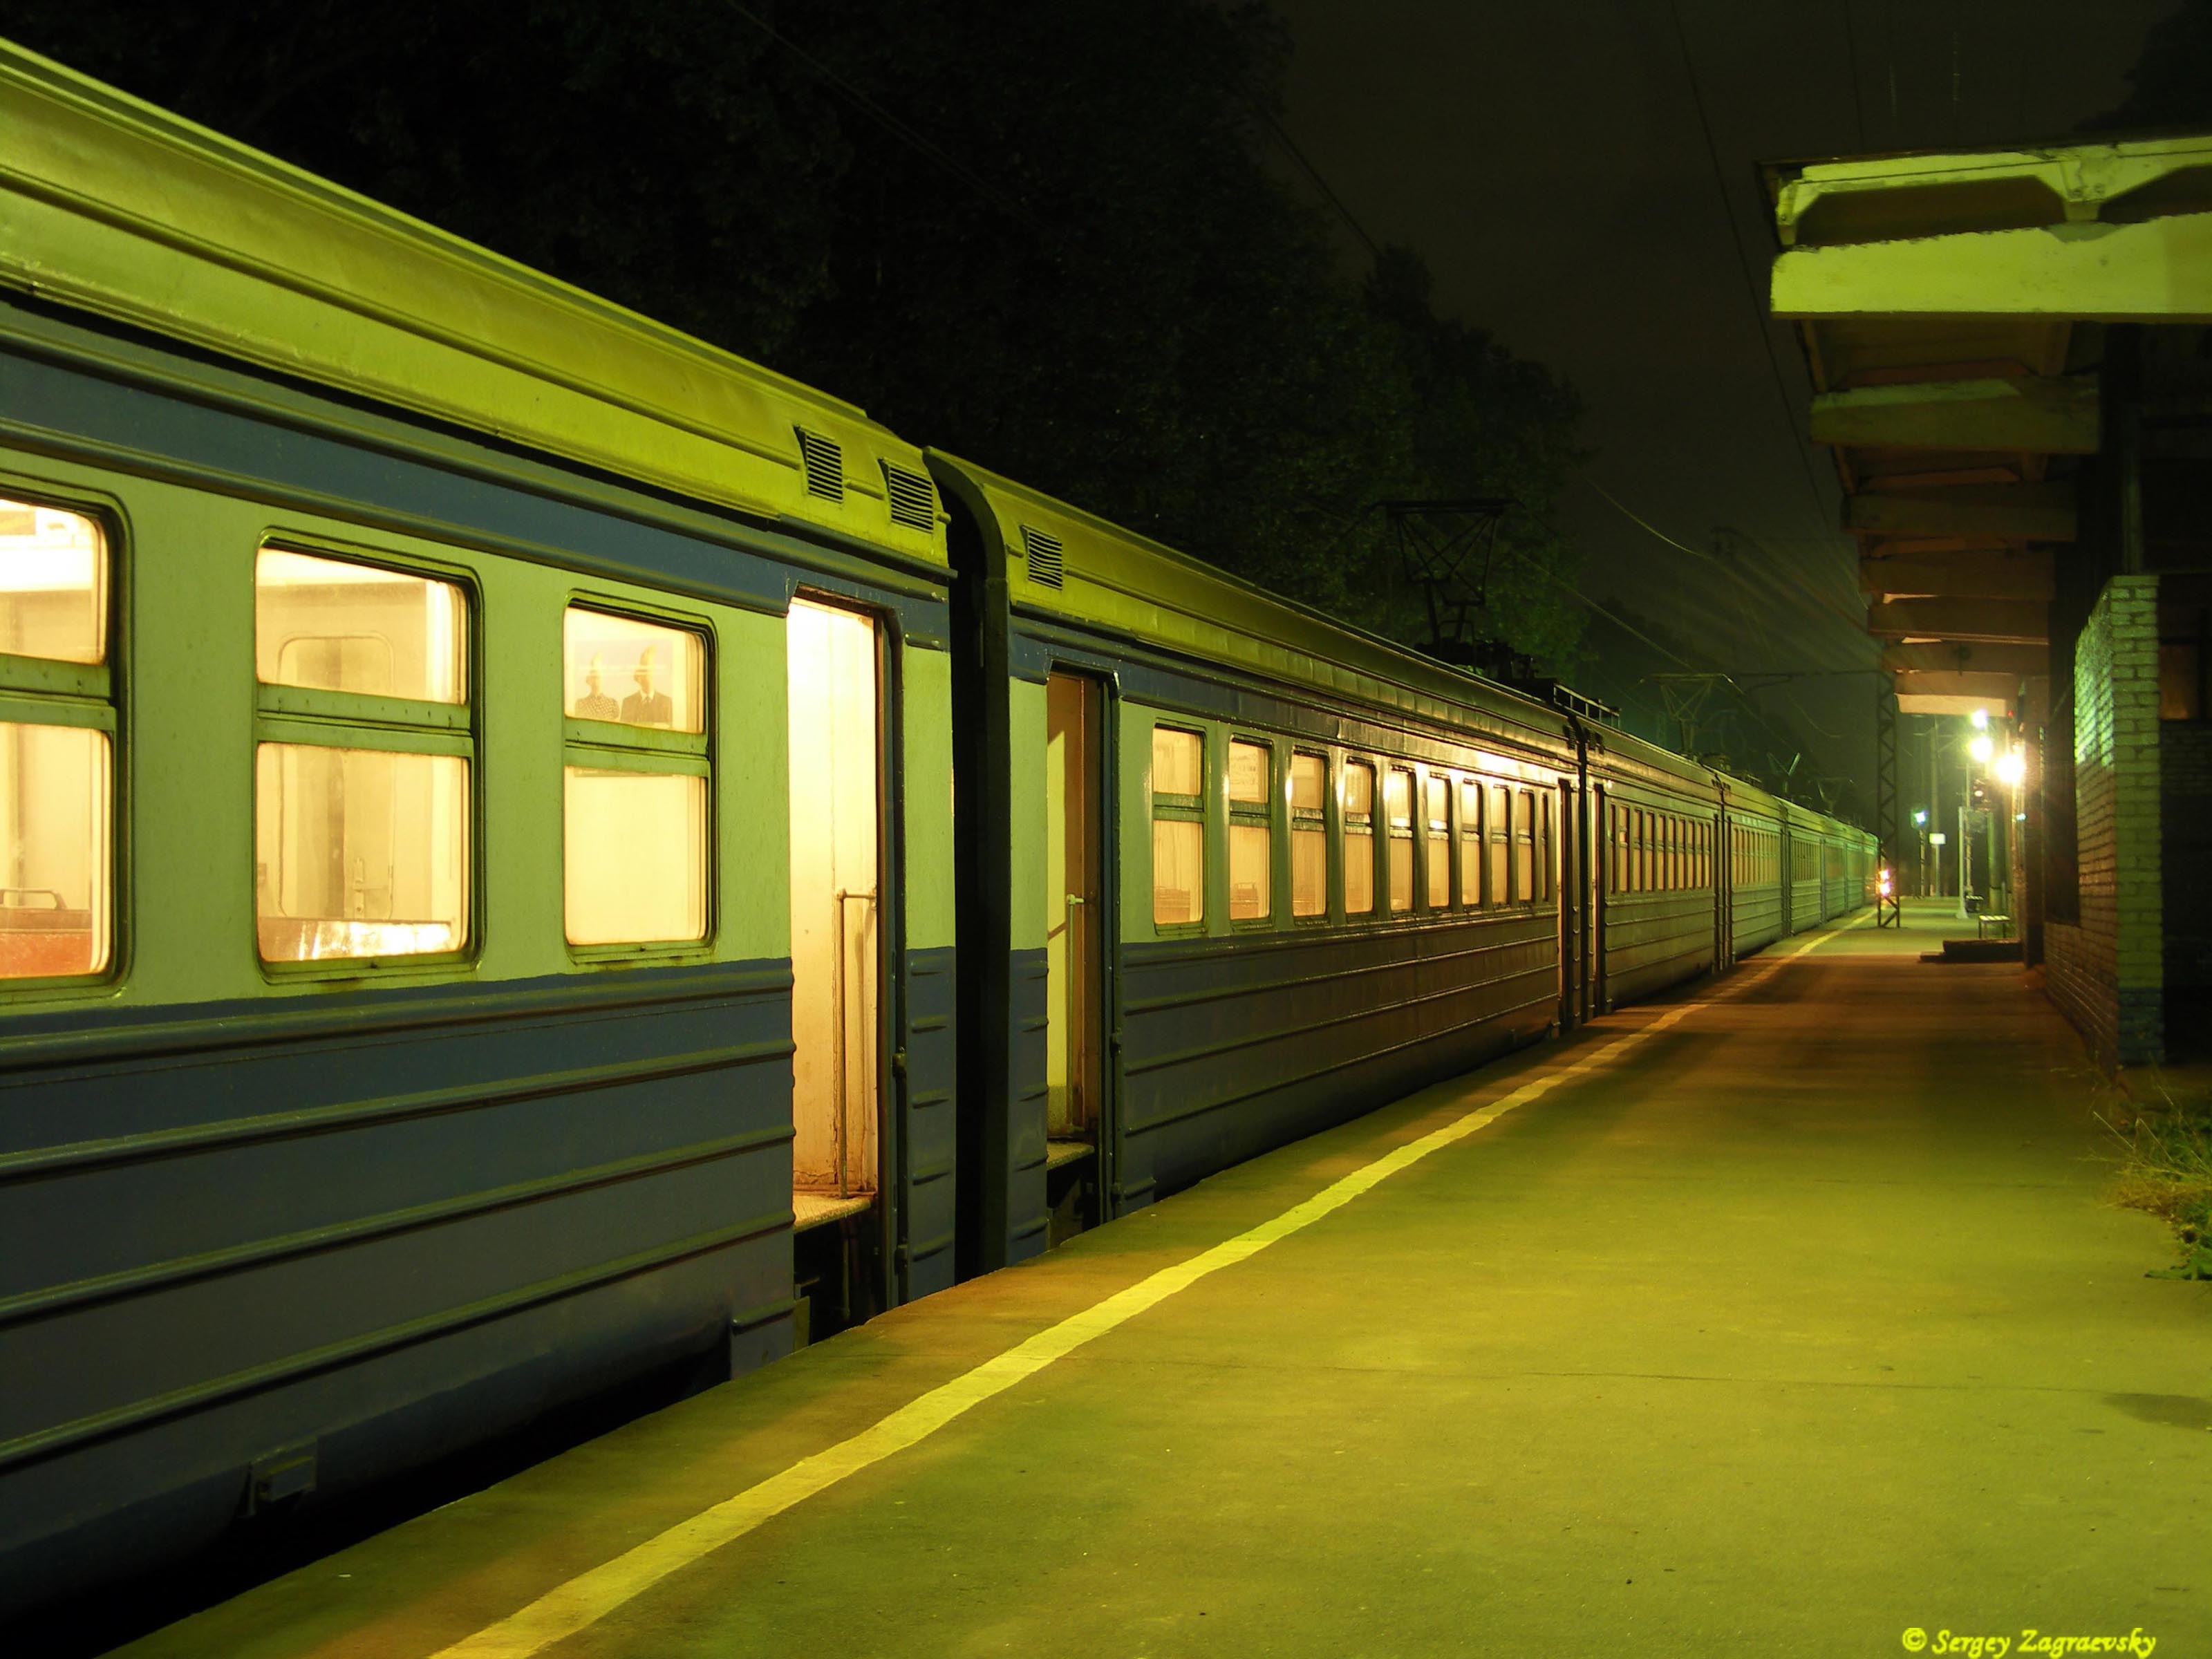 Sergey Zagraevsky. Photoart. Wallpaper (railways). 800x600